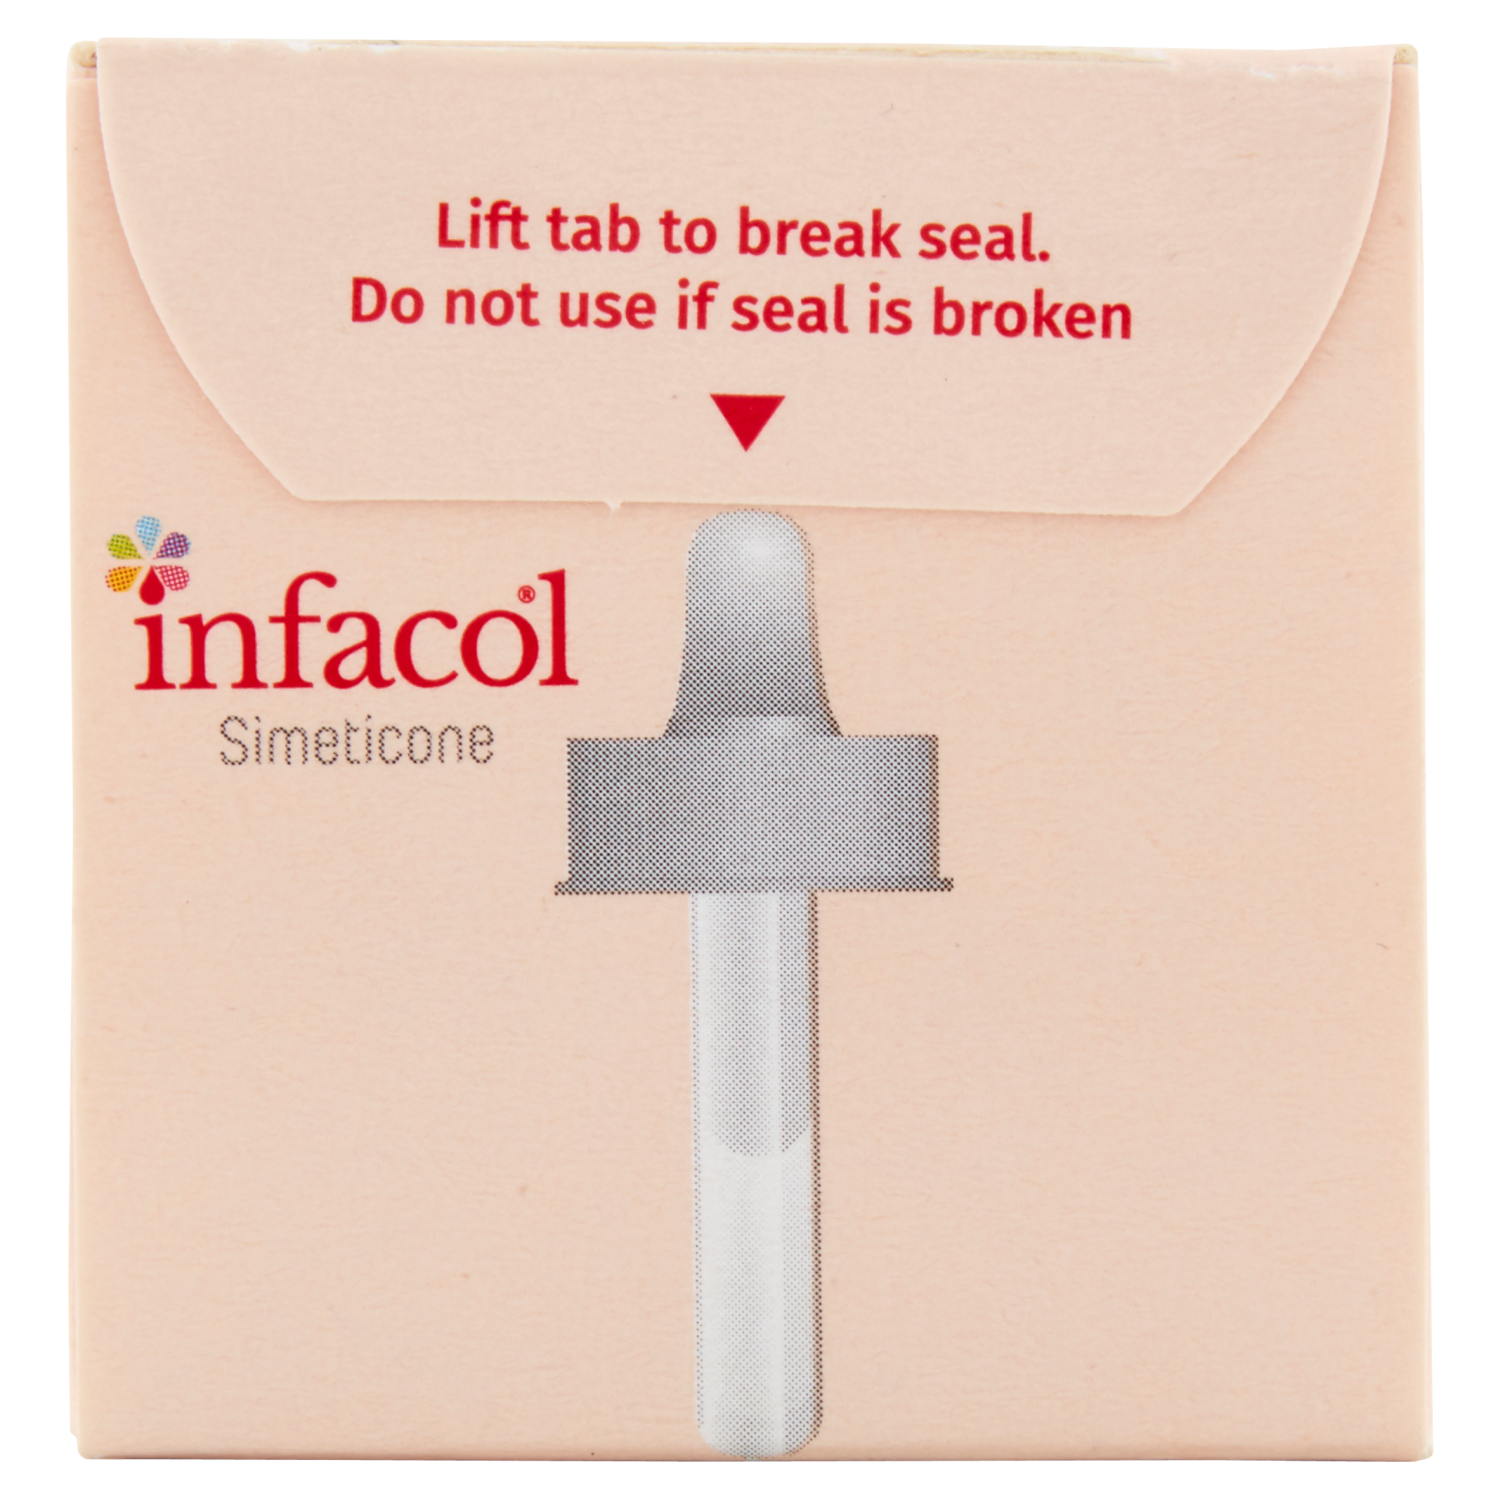 Infacol (Simeticone) Colic Relief Drops (55ml)